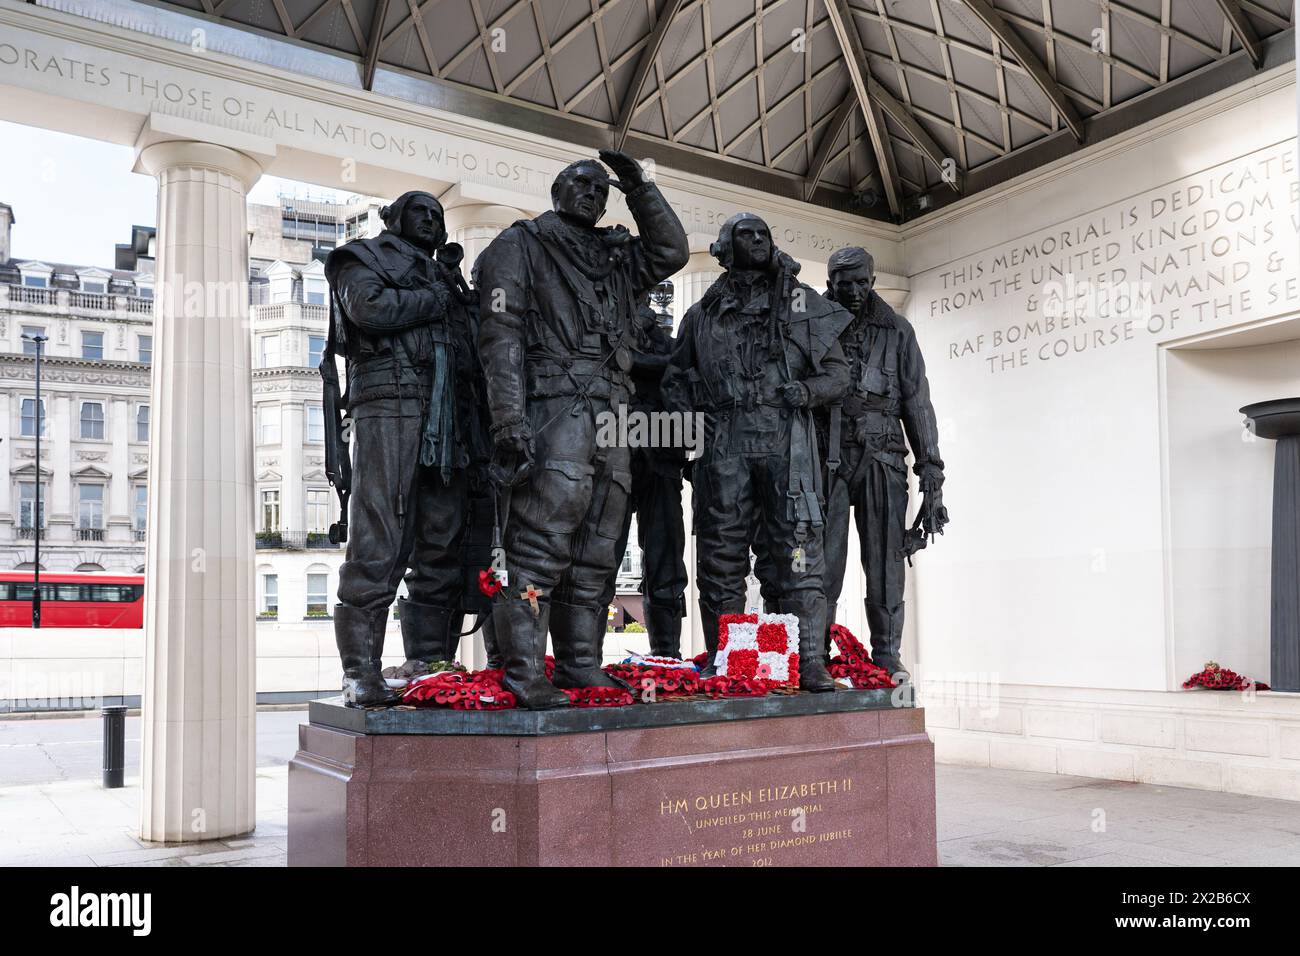 Monument commémoratif du Bomber Command avec des statues en bronze représentant les 55 573 aviateurs du Bomber Command qui ont perdu la vie dans la seconde Guerre mondiale Green Park, Londres Banque D'Images